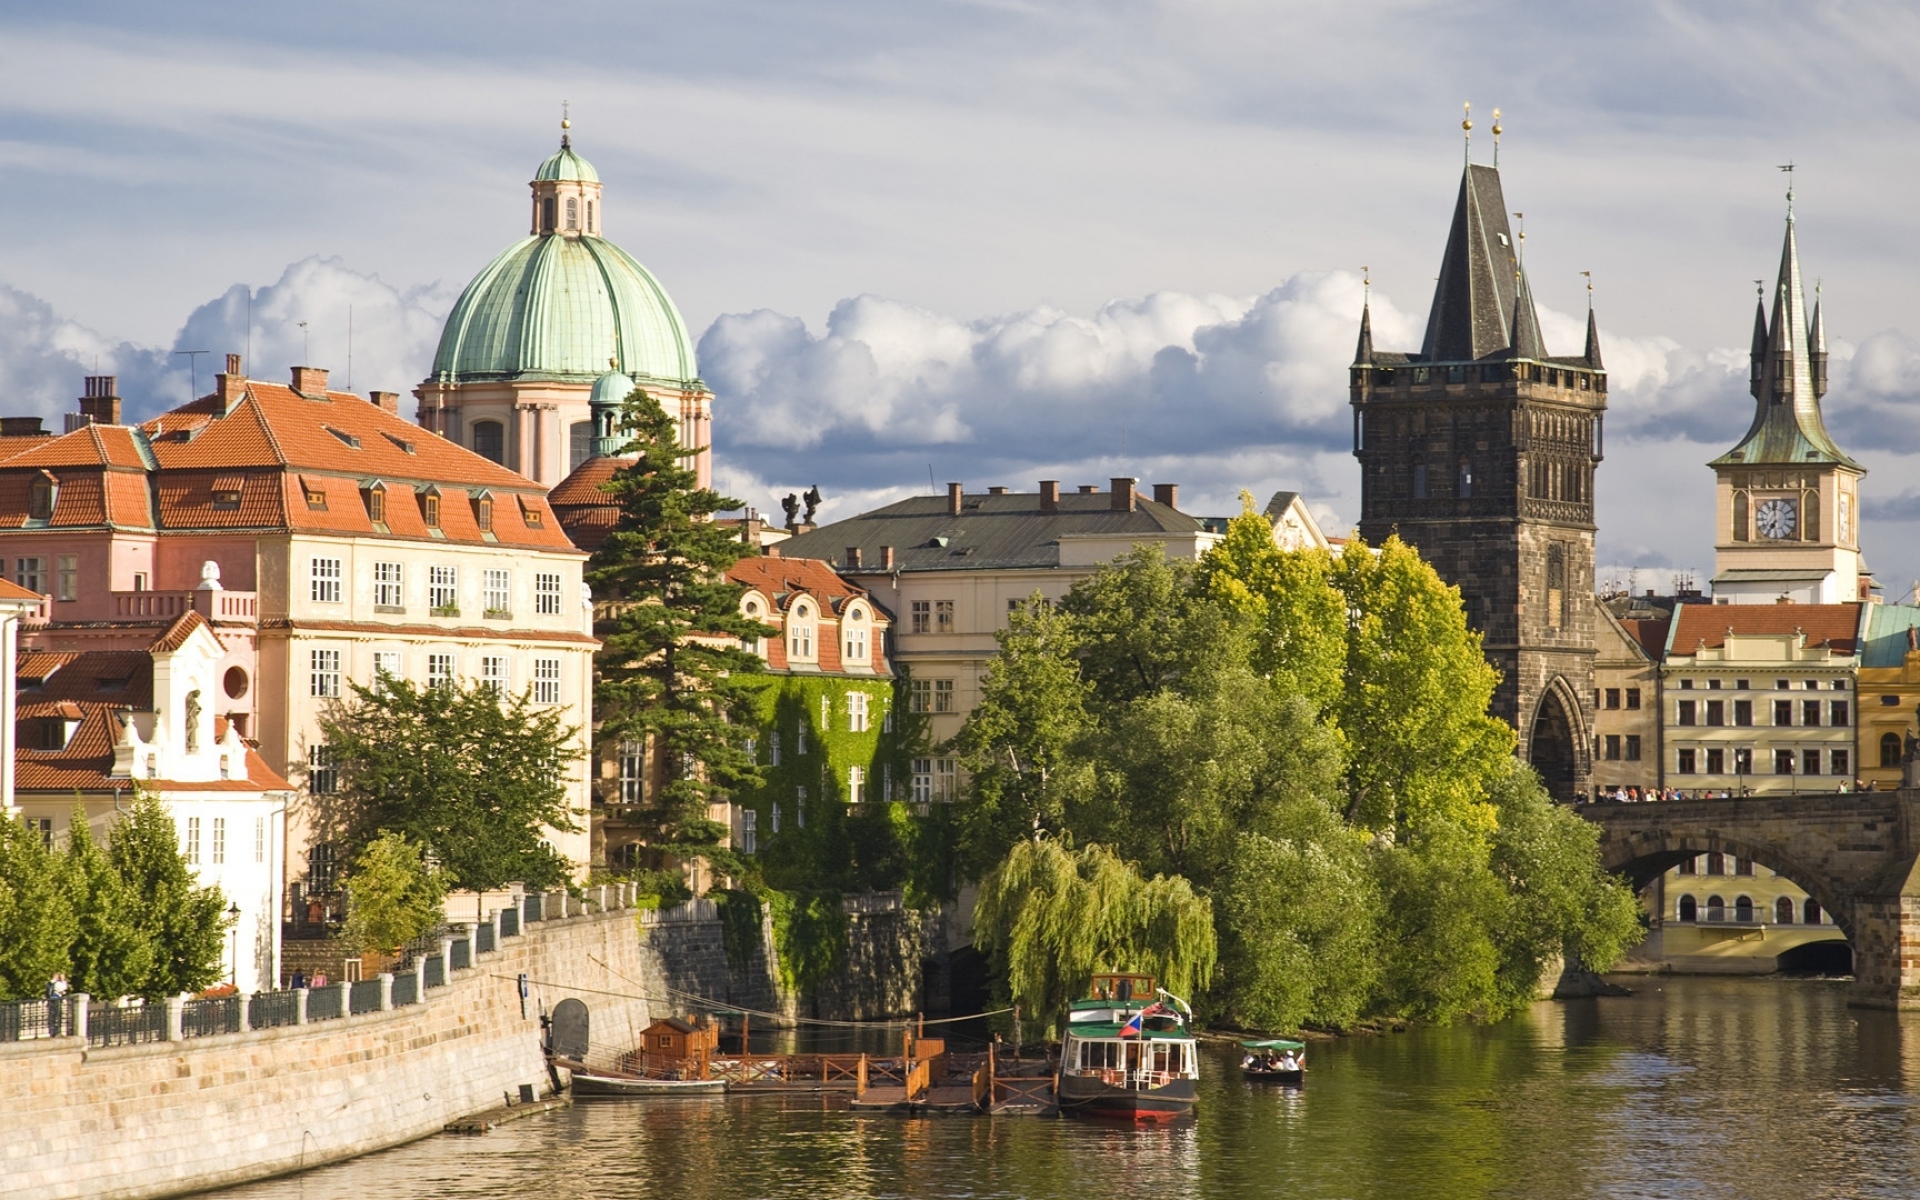 Картинки Прага, исторический центр, здания, река, деревья фото и обои на рабочий стол